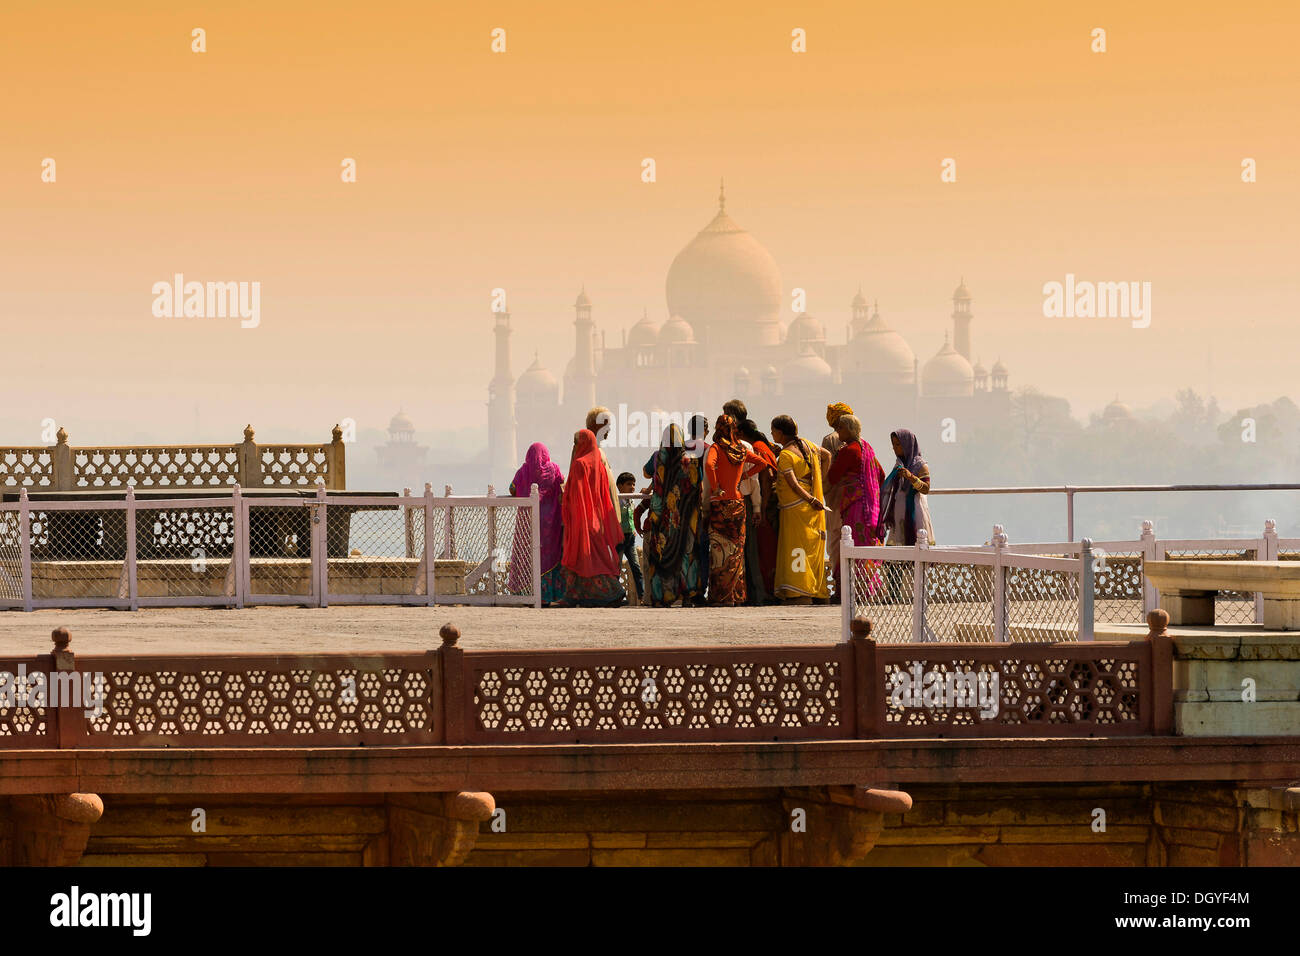 Donne abbigliate in sari colorati al Red Fort, il Taj Mahal sul retro, Agra, Uttar Pradesh, India Foto Stock